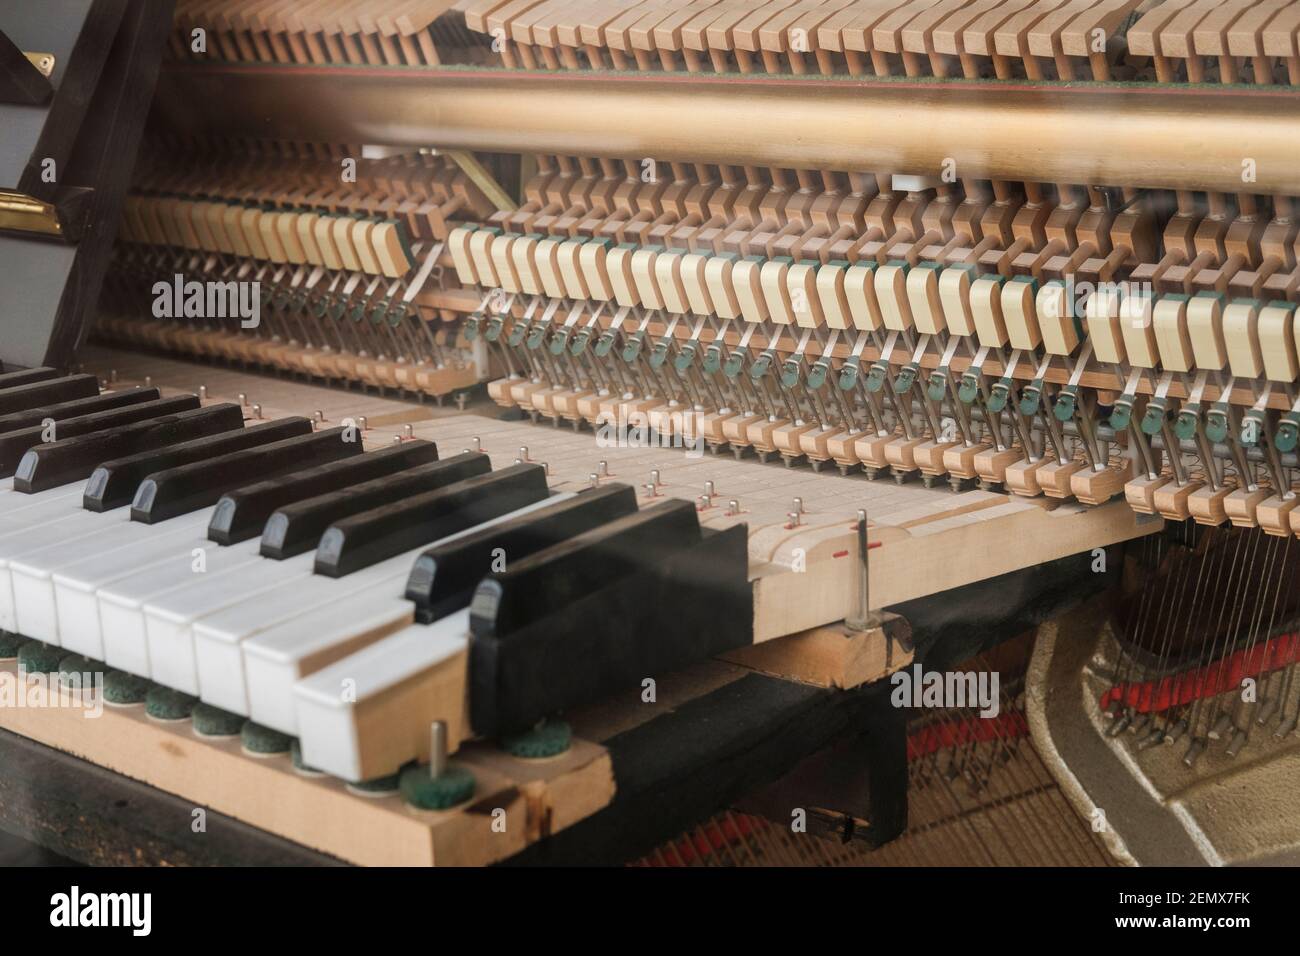 Das Innere eines Klaviers ist ein Meisterstück der Technik, der Saitenrahmen fasst 30 Tonnen Spannung, die von rund 230 Saiten mit 88 Tonhöhen erzeugt werden. Th Stockfoto